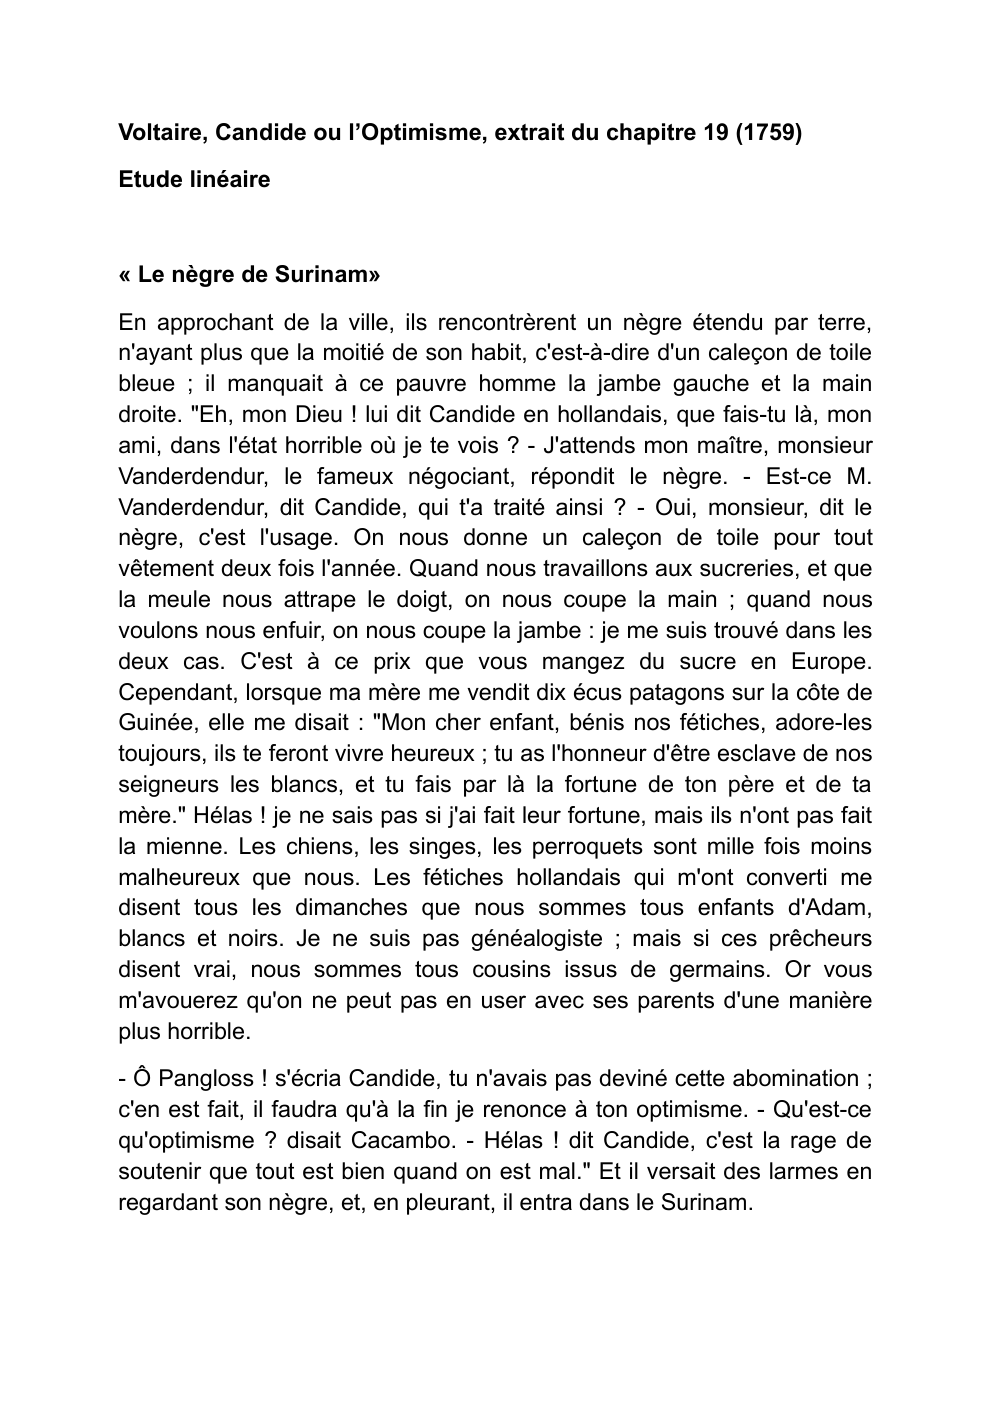 Prévisualisation du document VOLTAIRE Candide - extrait chapitre 19 « Le nègre de Surinam»